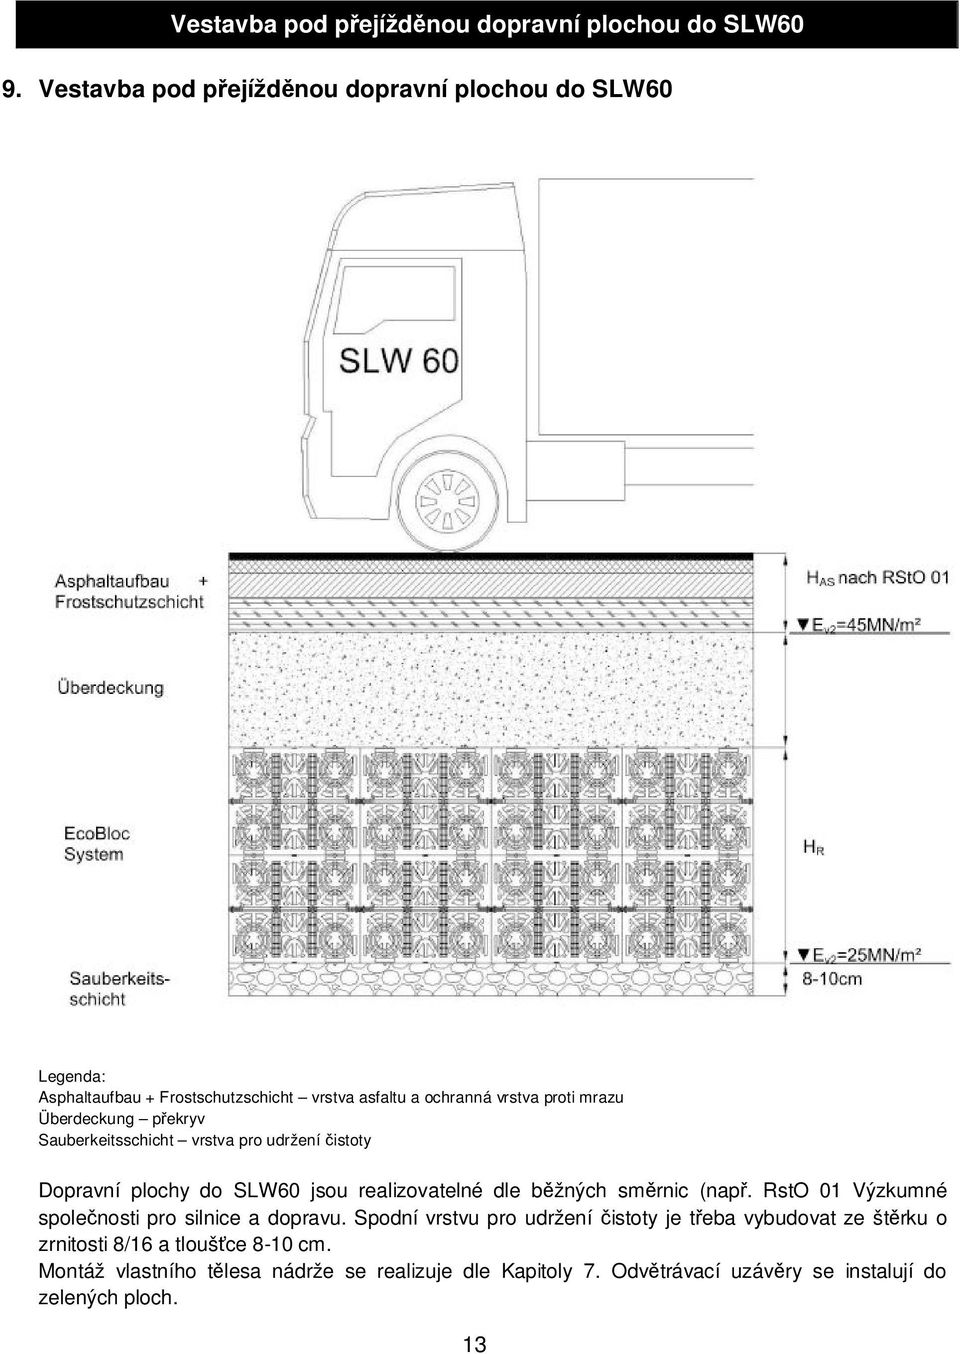 Überdeckung p ekryv Sauberkeitsschicht vrstva pro udržení istoty Dopravní plochy do SLW60 jsou realizovatelné dle b žných sm rnic (nap.